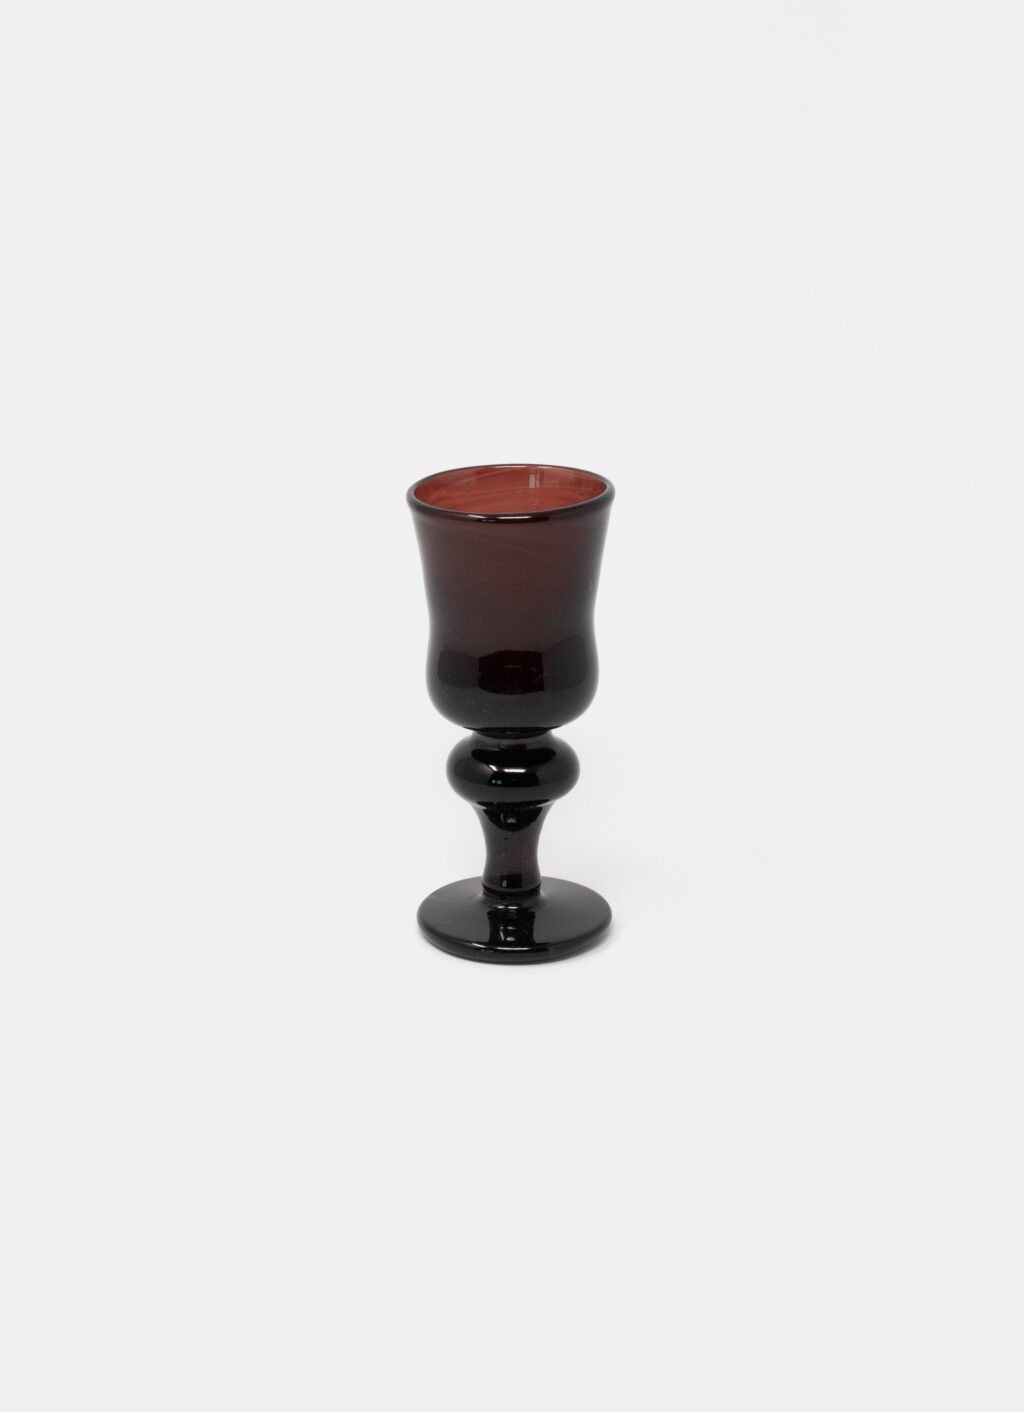 La Soufflerie - Handblown Glass Vase - Framboise - White Wine Glass